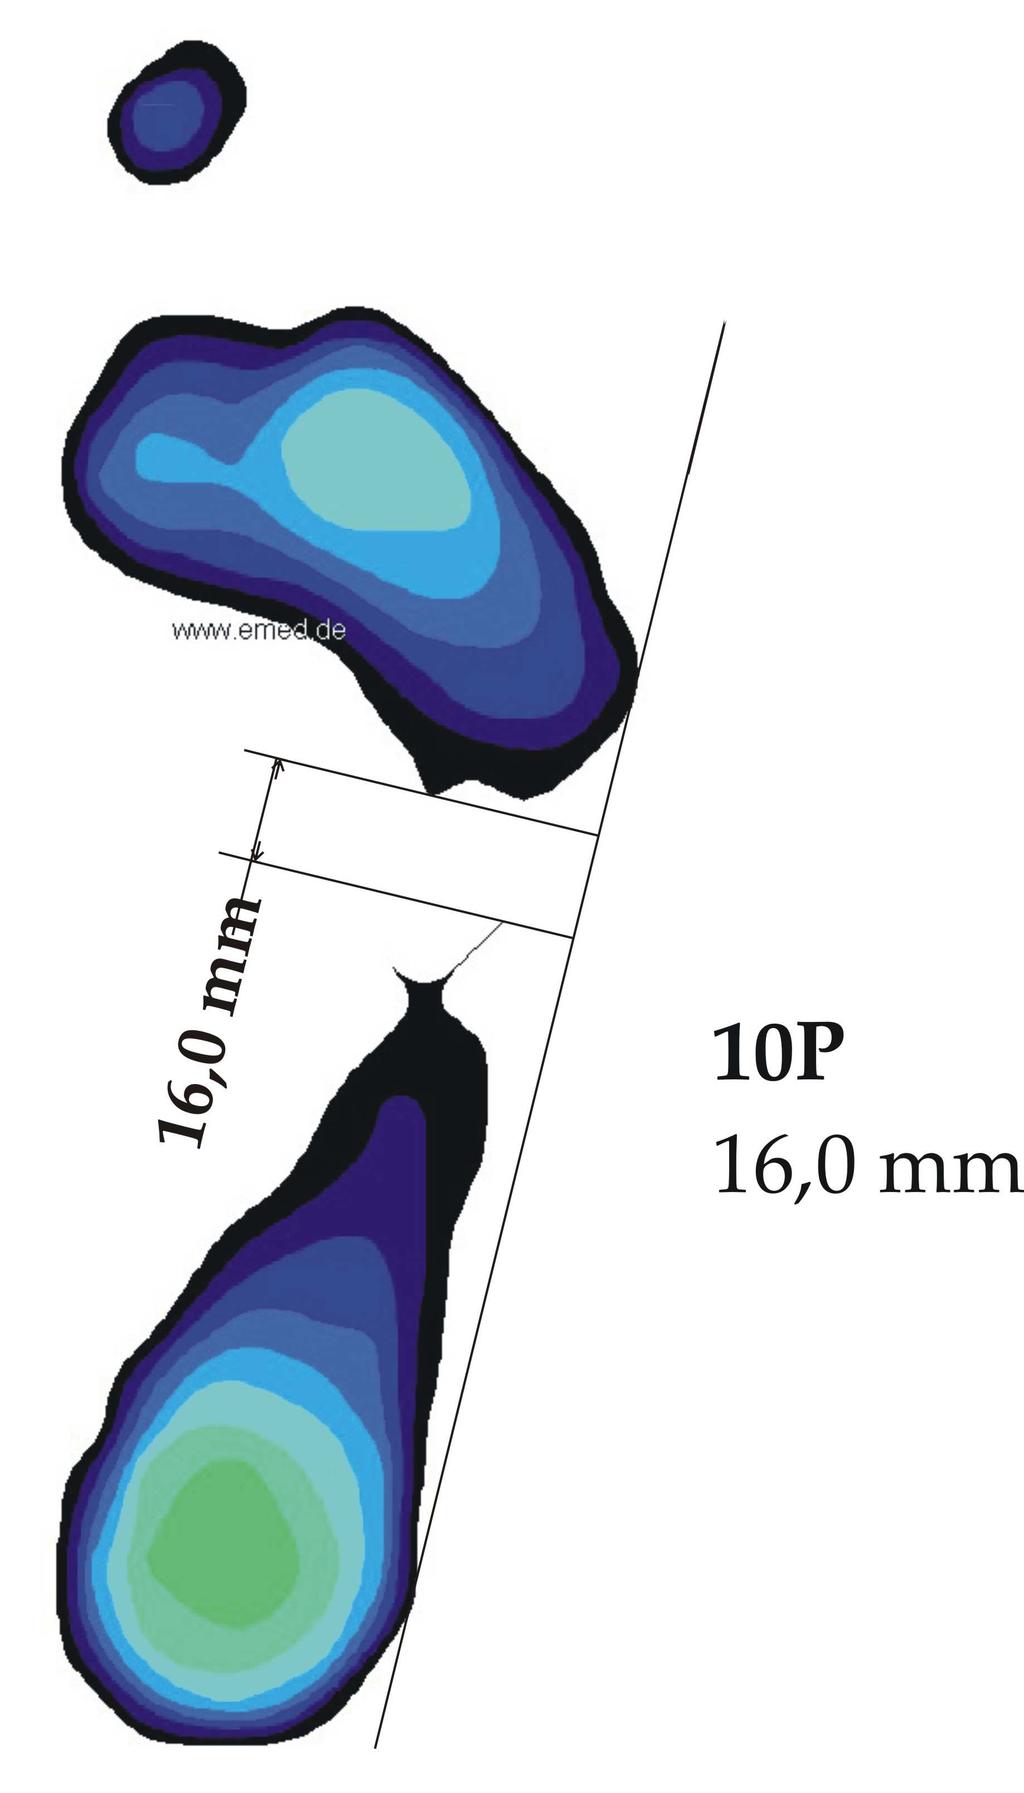 Naměřené hodnoty vysokých nohou se u jednotlivých probandů, na rozdíl od probandů s normálně kletou nohou, velice liší (viz tab. 6). Některé rozměry se liší i o několik centimetrů.